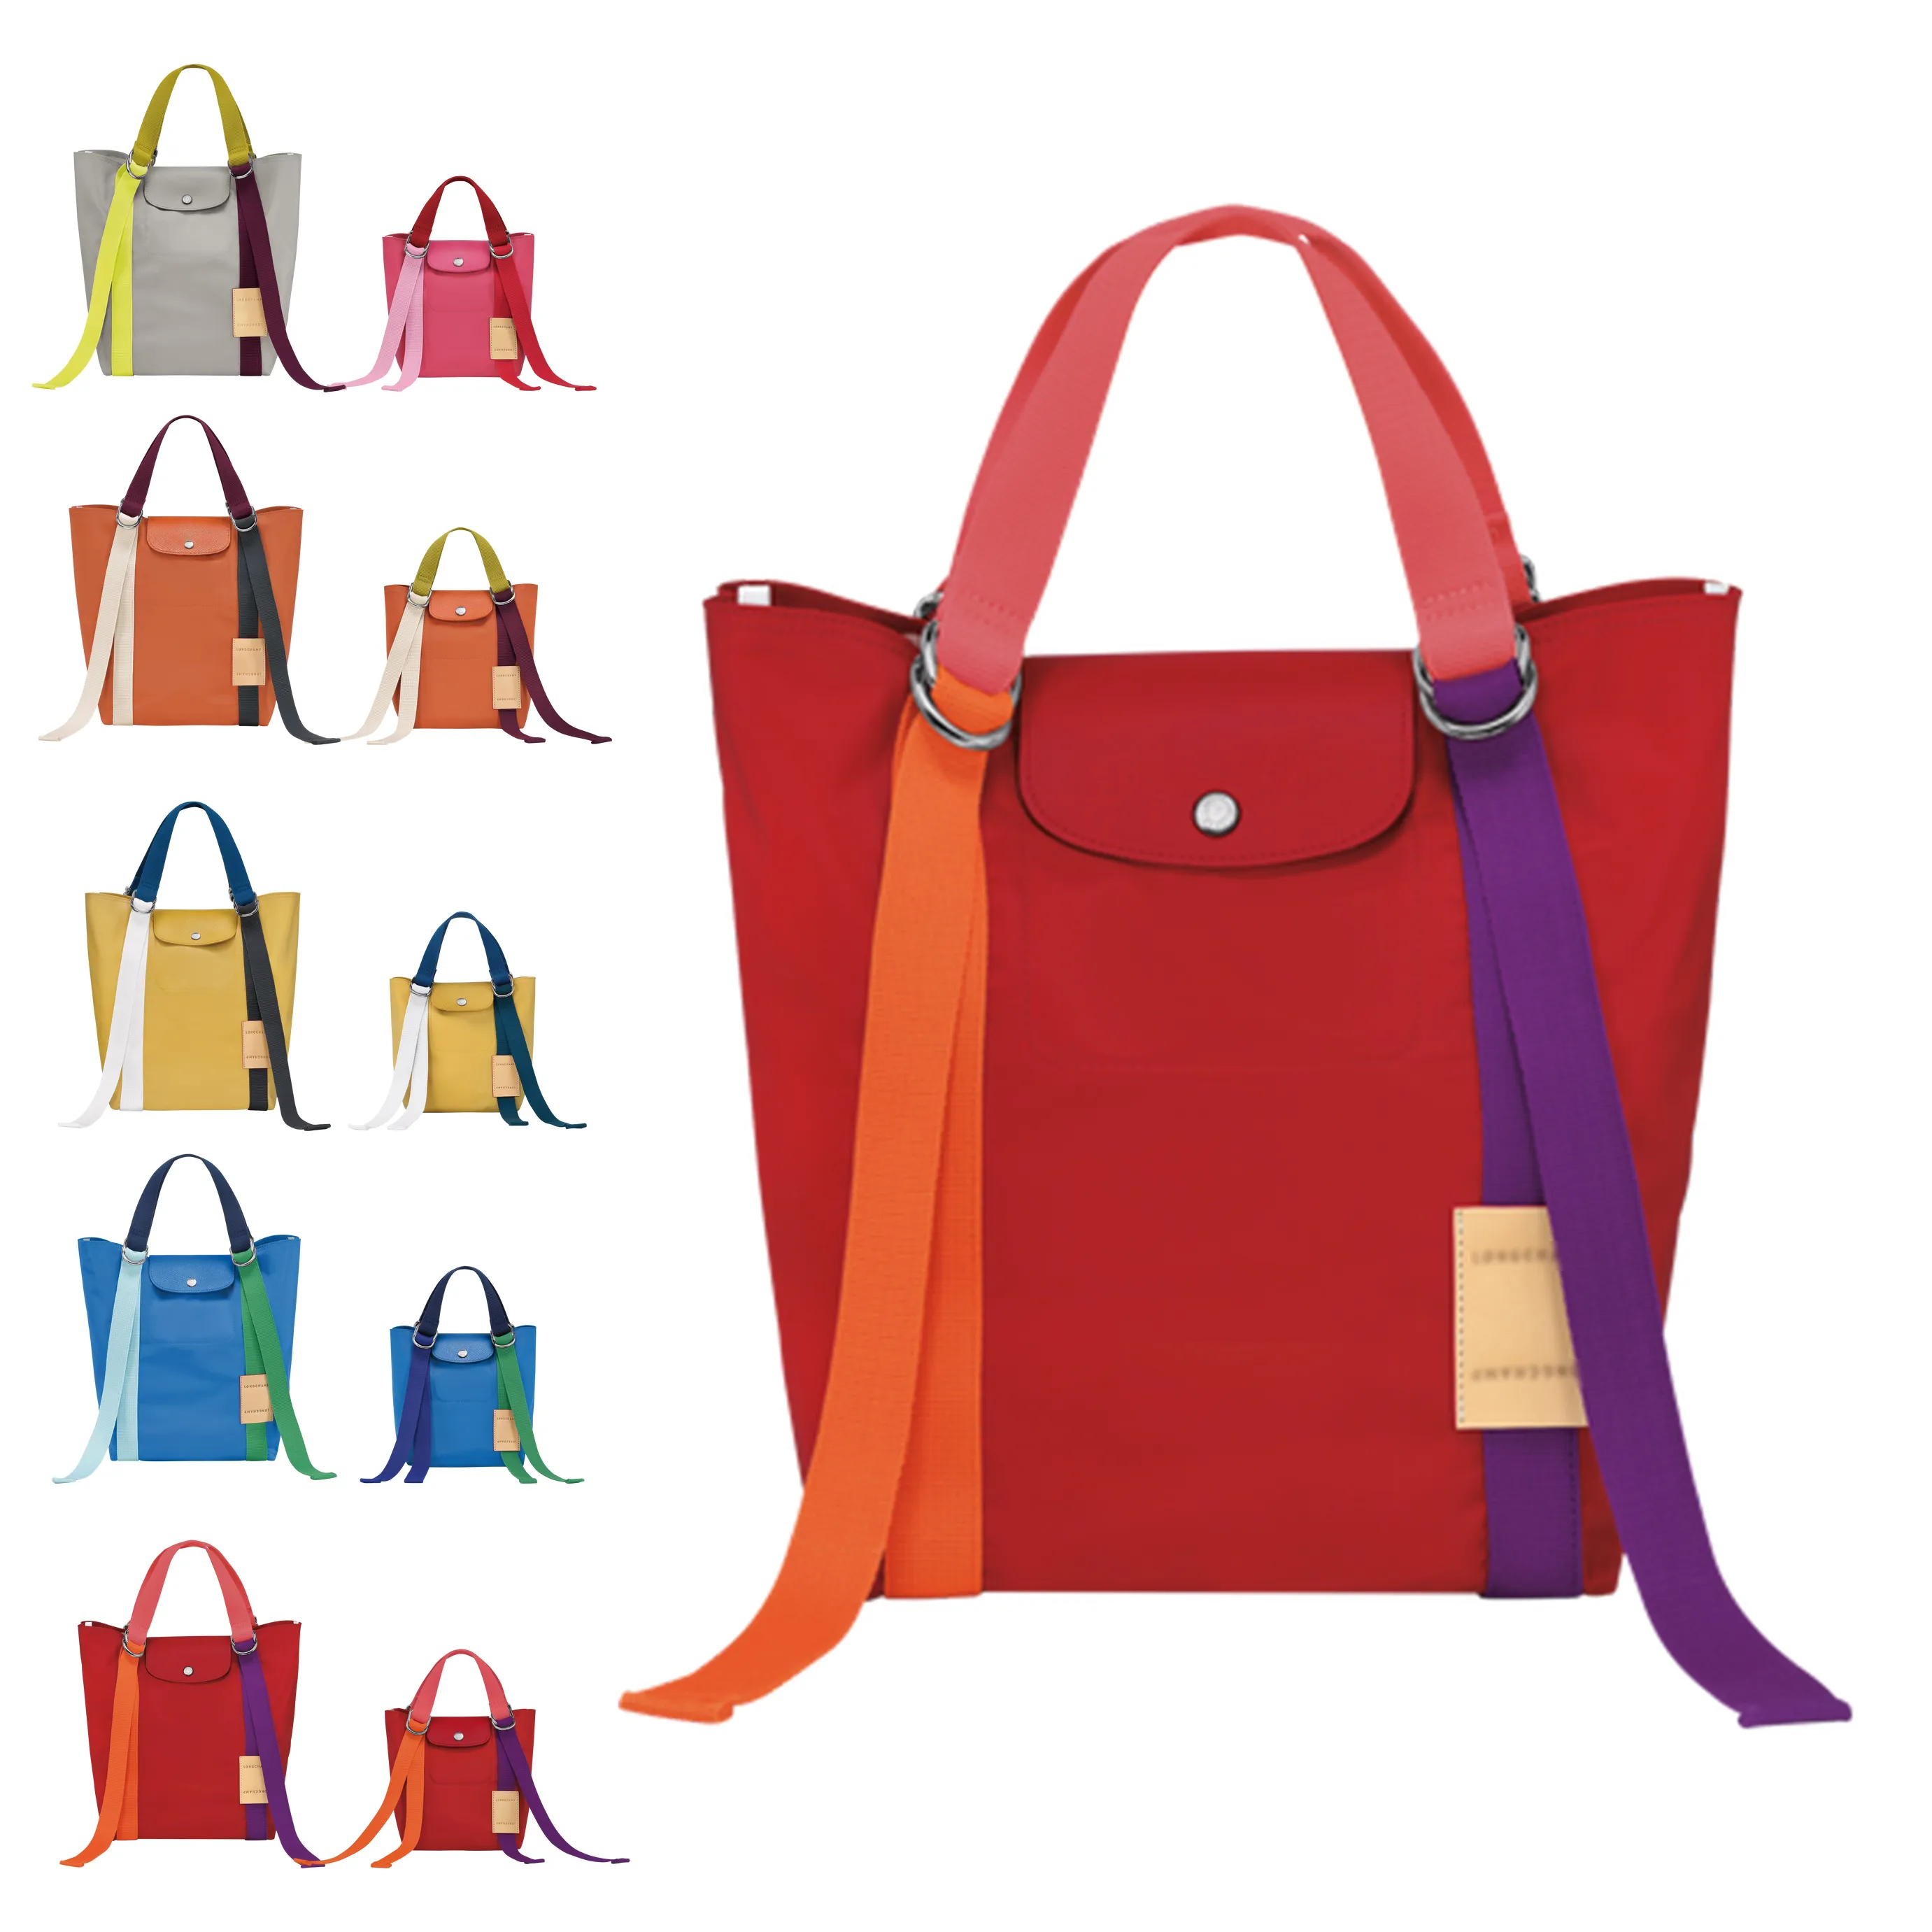 Collezione borse donna borsa palestra donna: prezzi, sconti